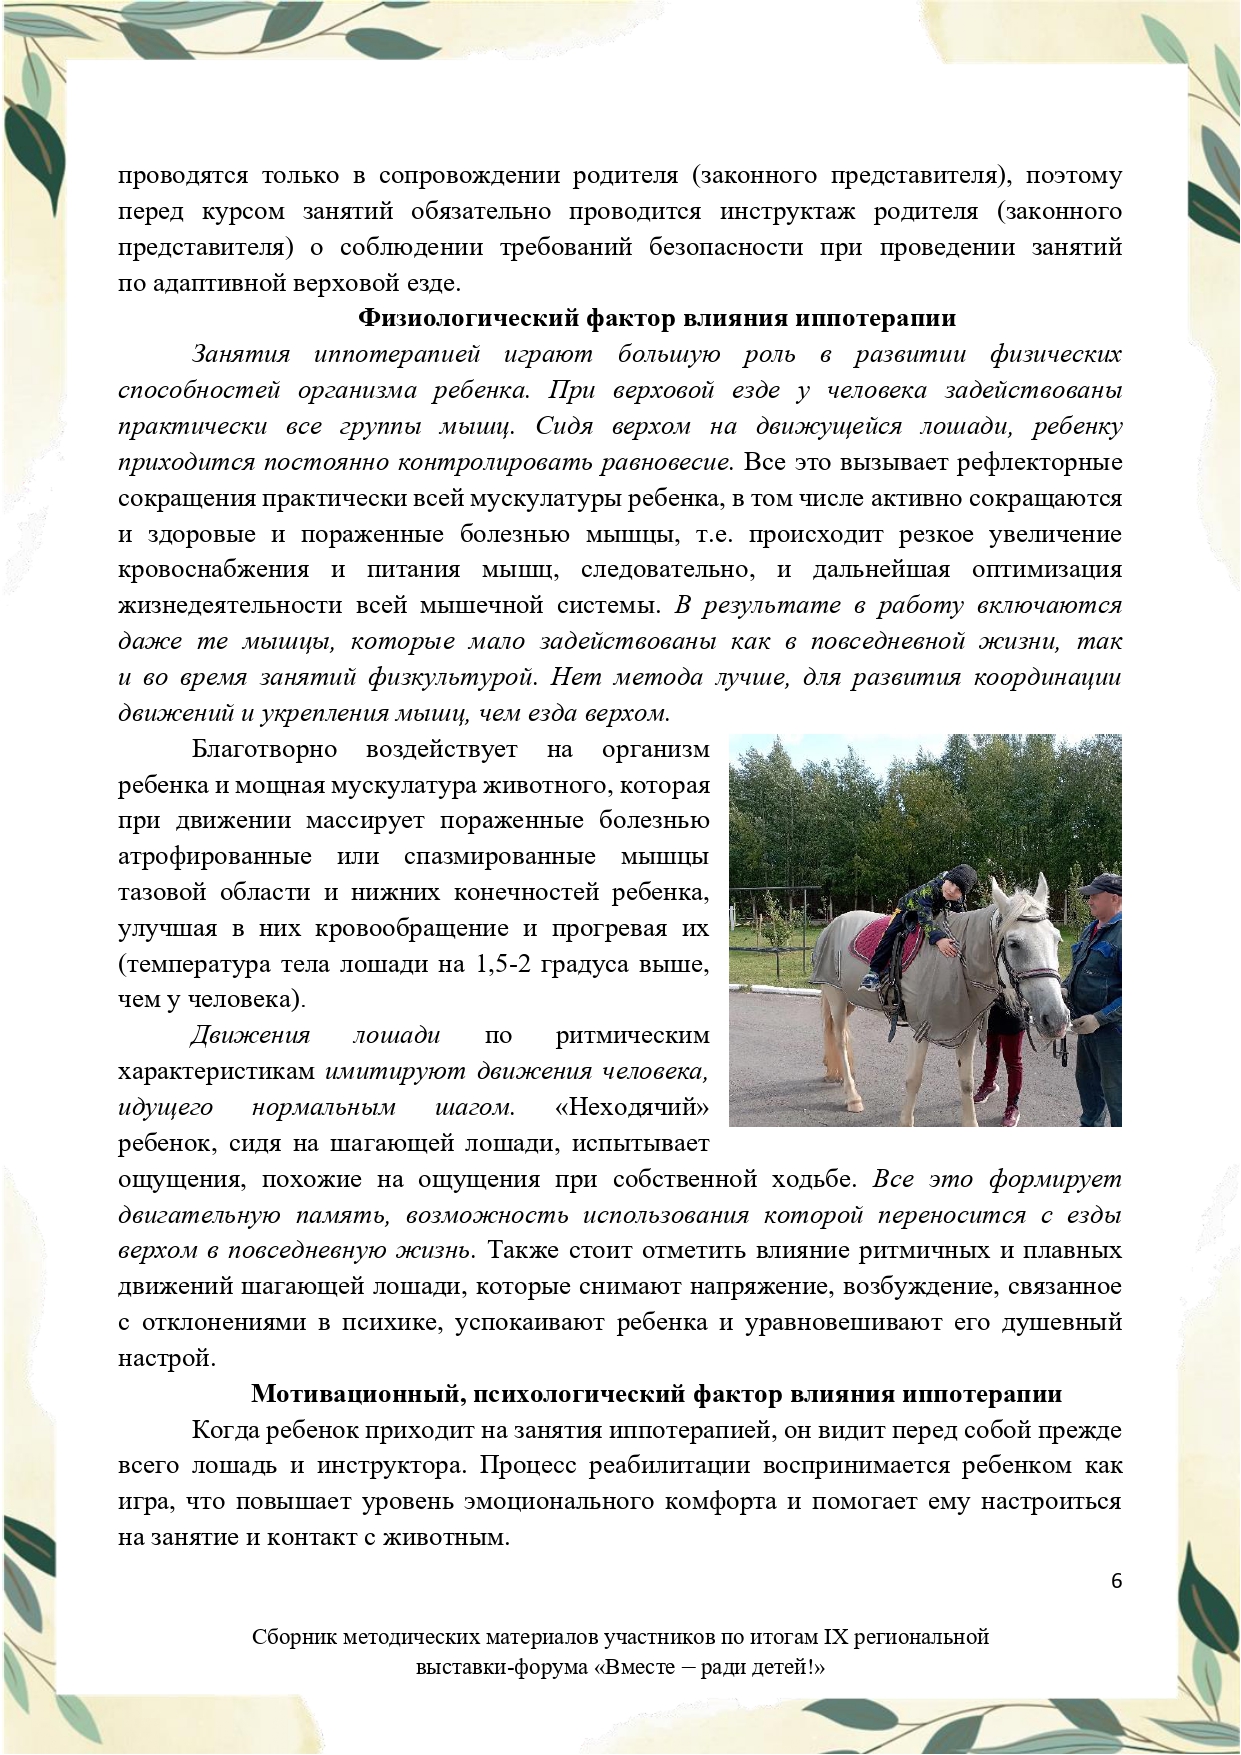 Sbornik_metodicheskikh_materialov_uchastnikov_IX_regionalnoy_vystavki-foruma_Vmeste__radi_detey_33__2023_page-0006